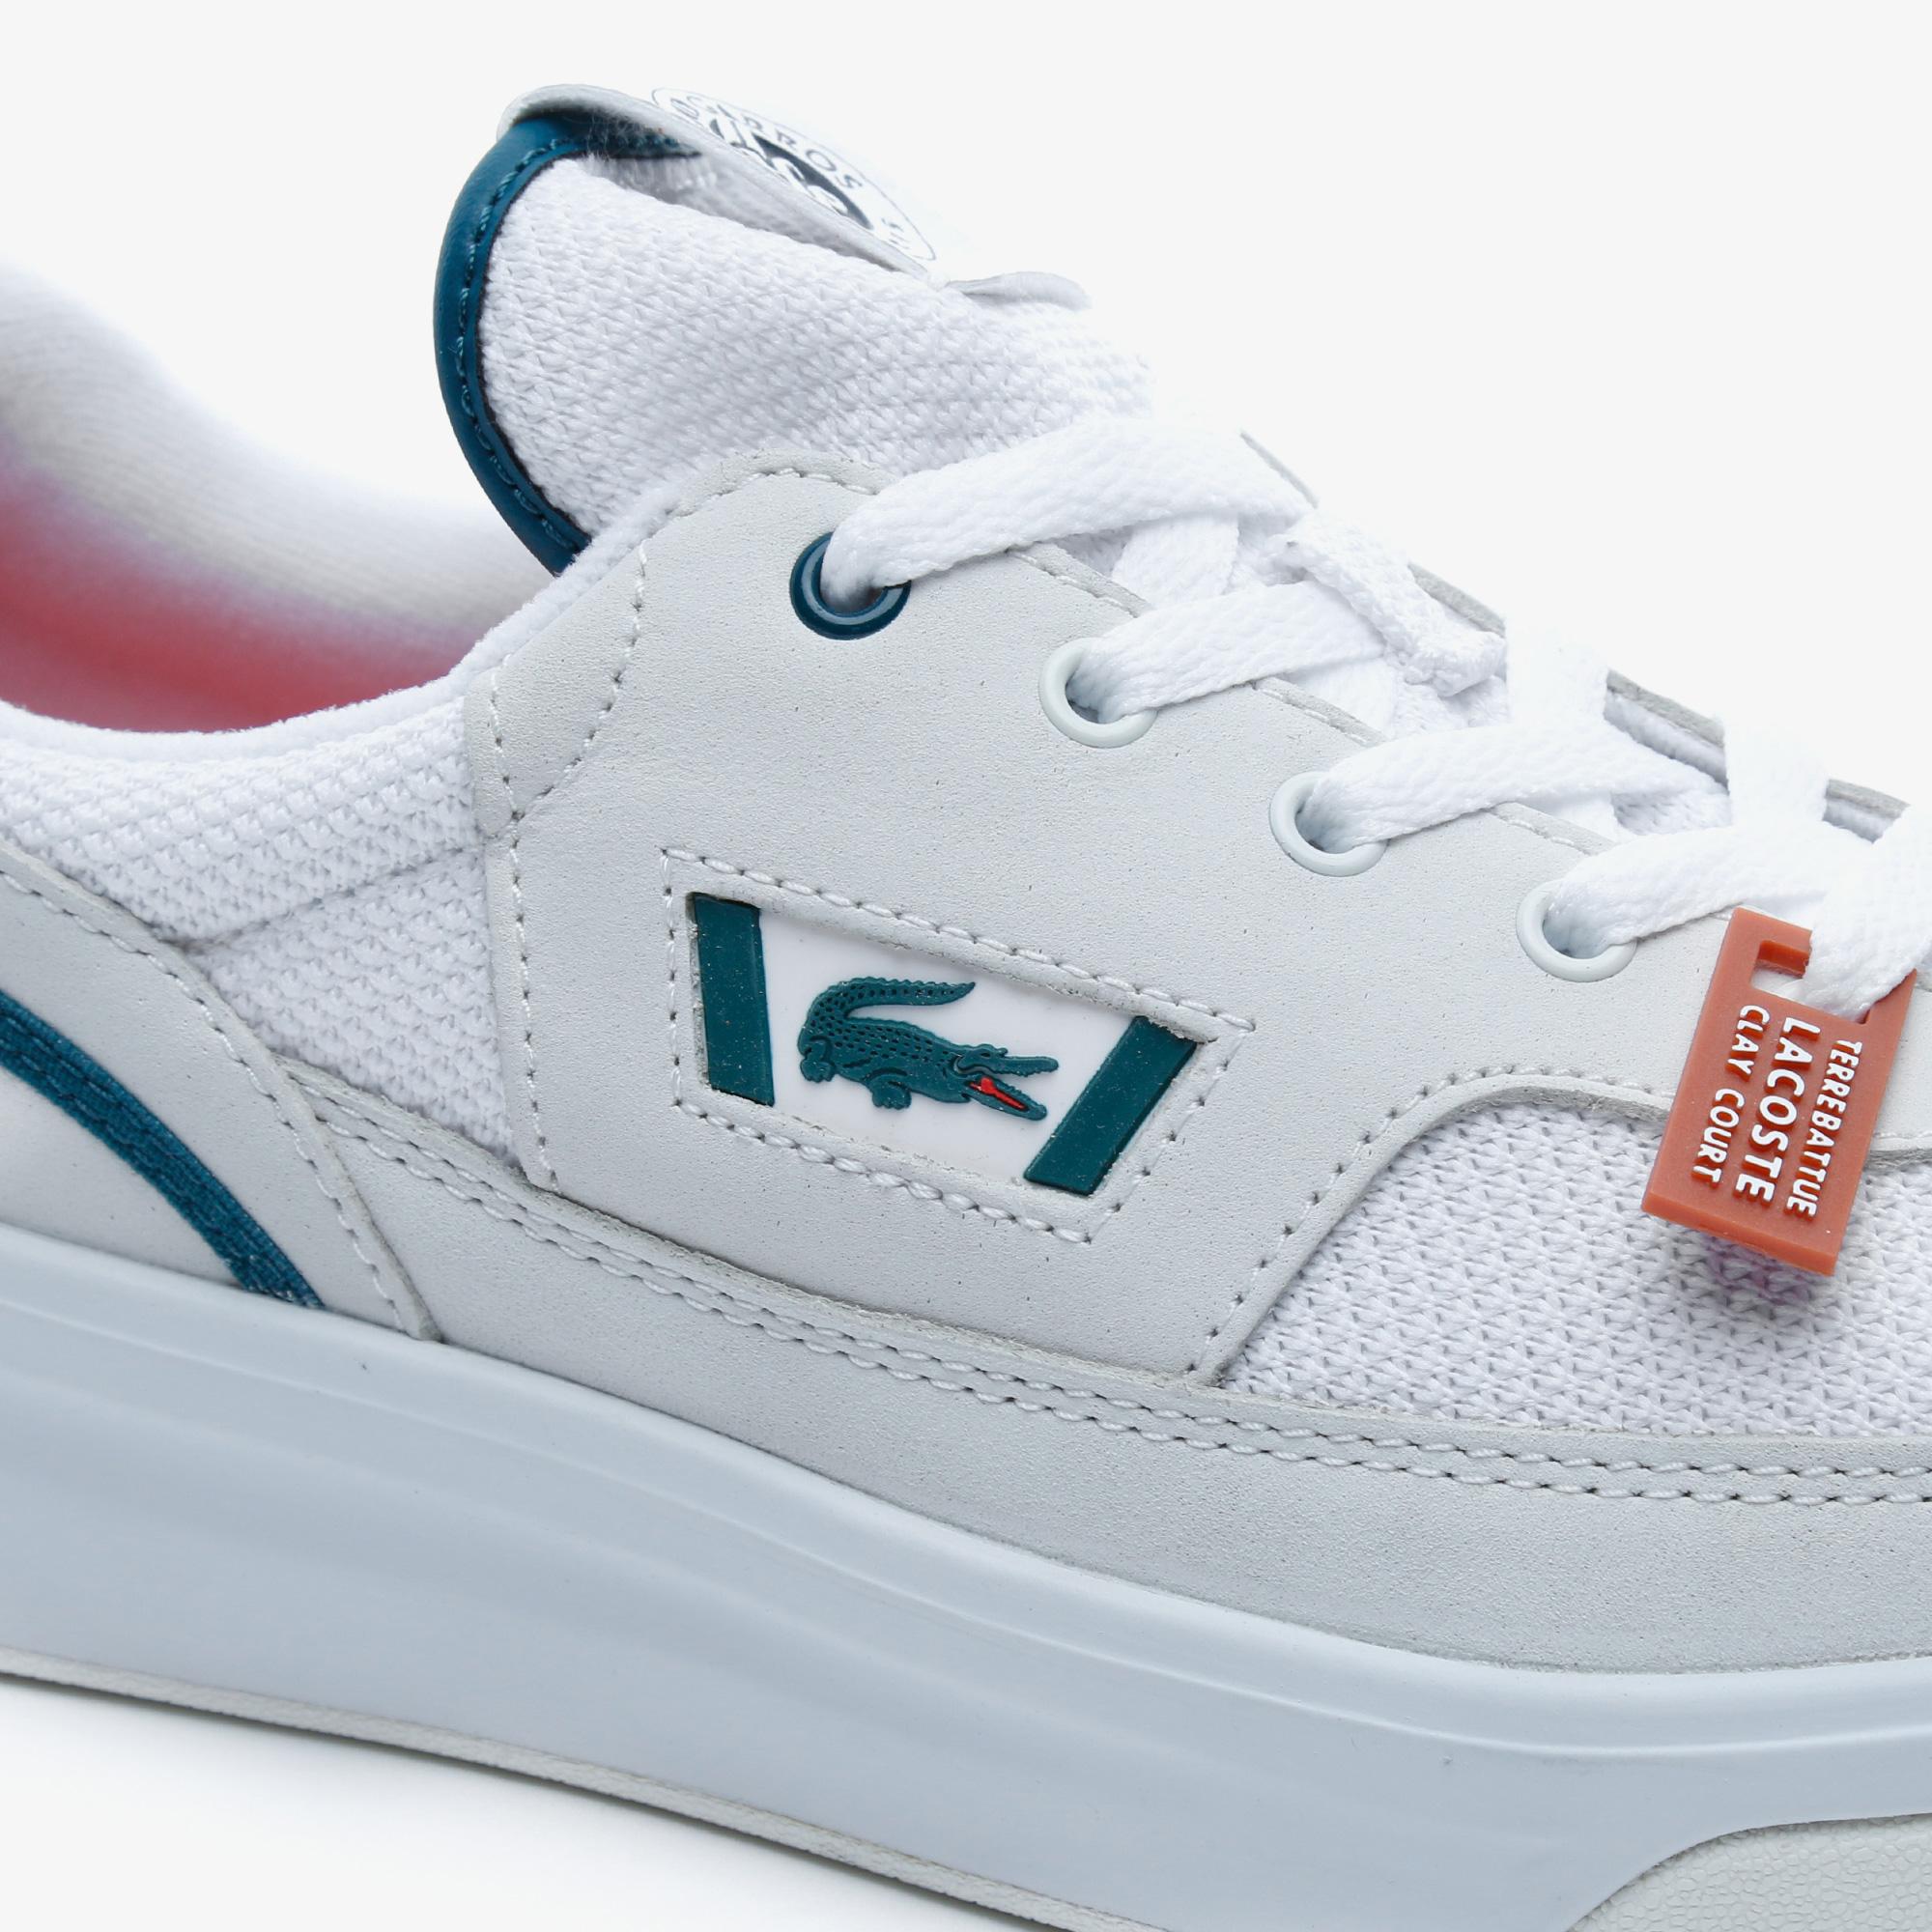 Lacoste G80 Rg 120 1 Sma Wht/Dk Grn Erkek Beyaz - Koyu Yeşil Deri Sneaker. 7